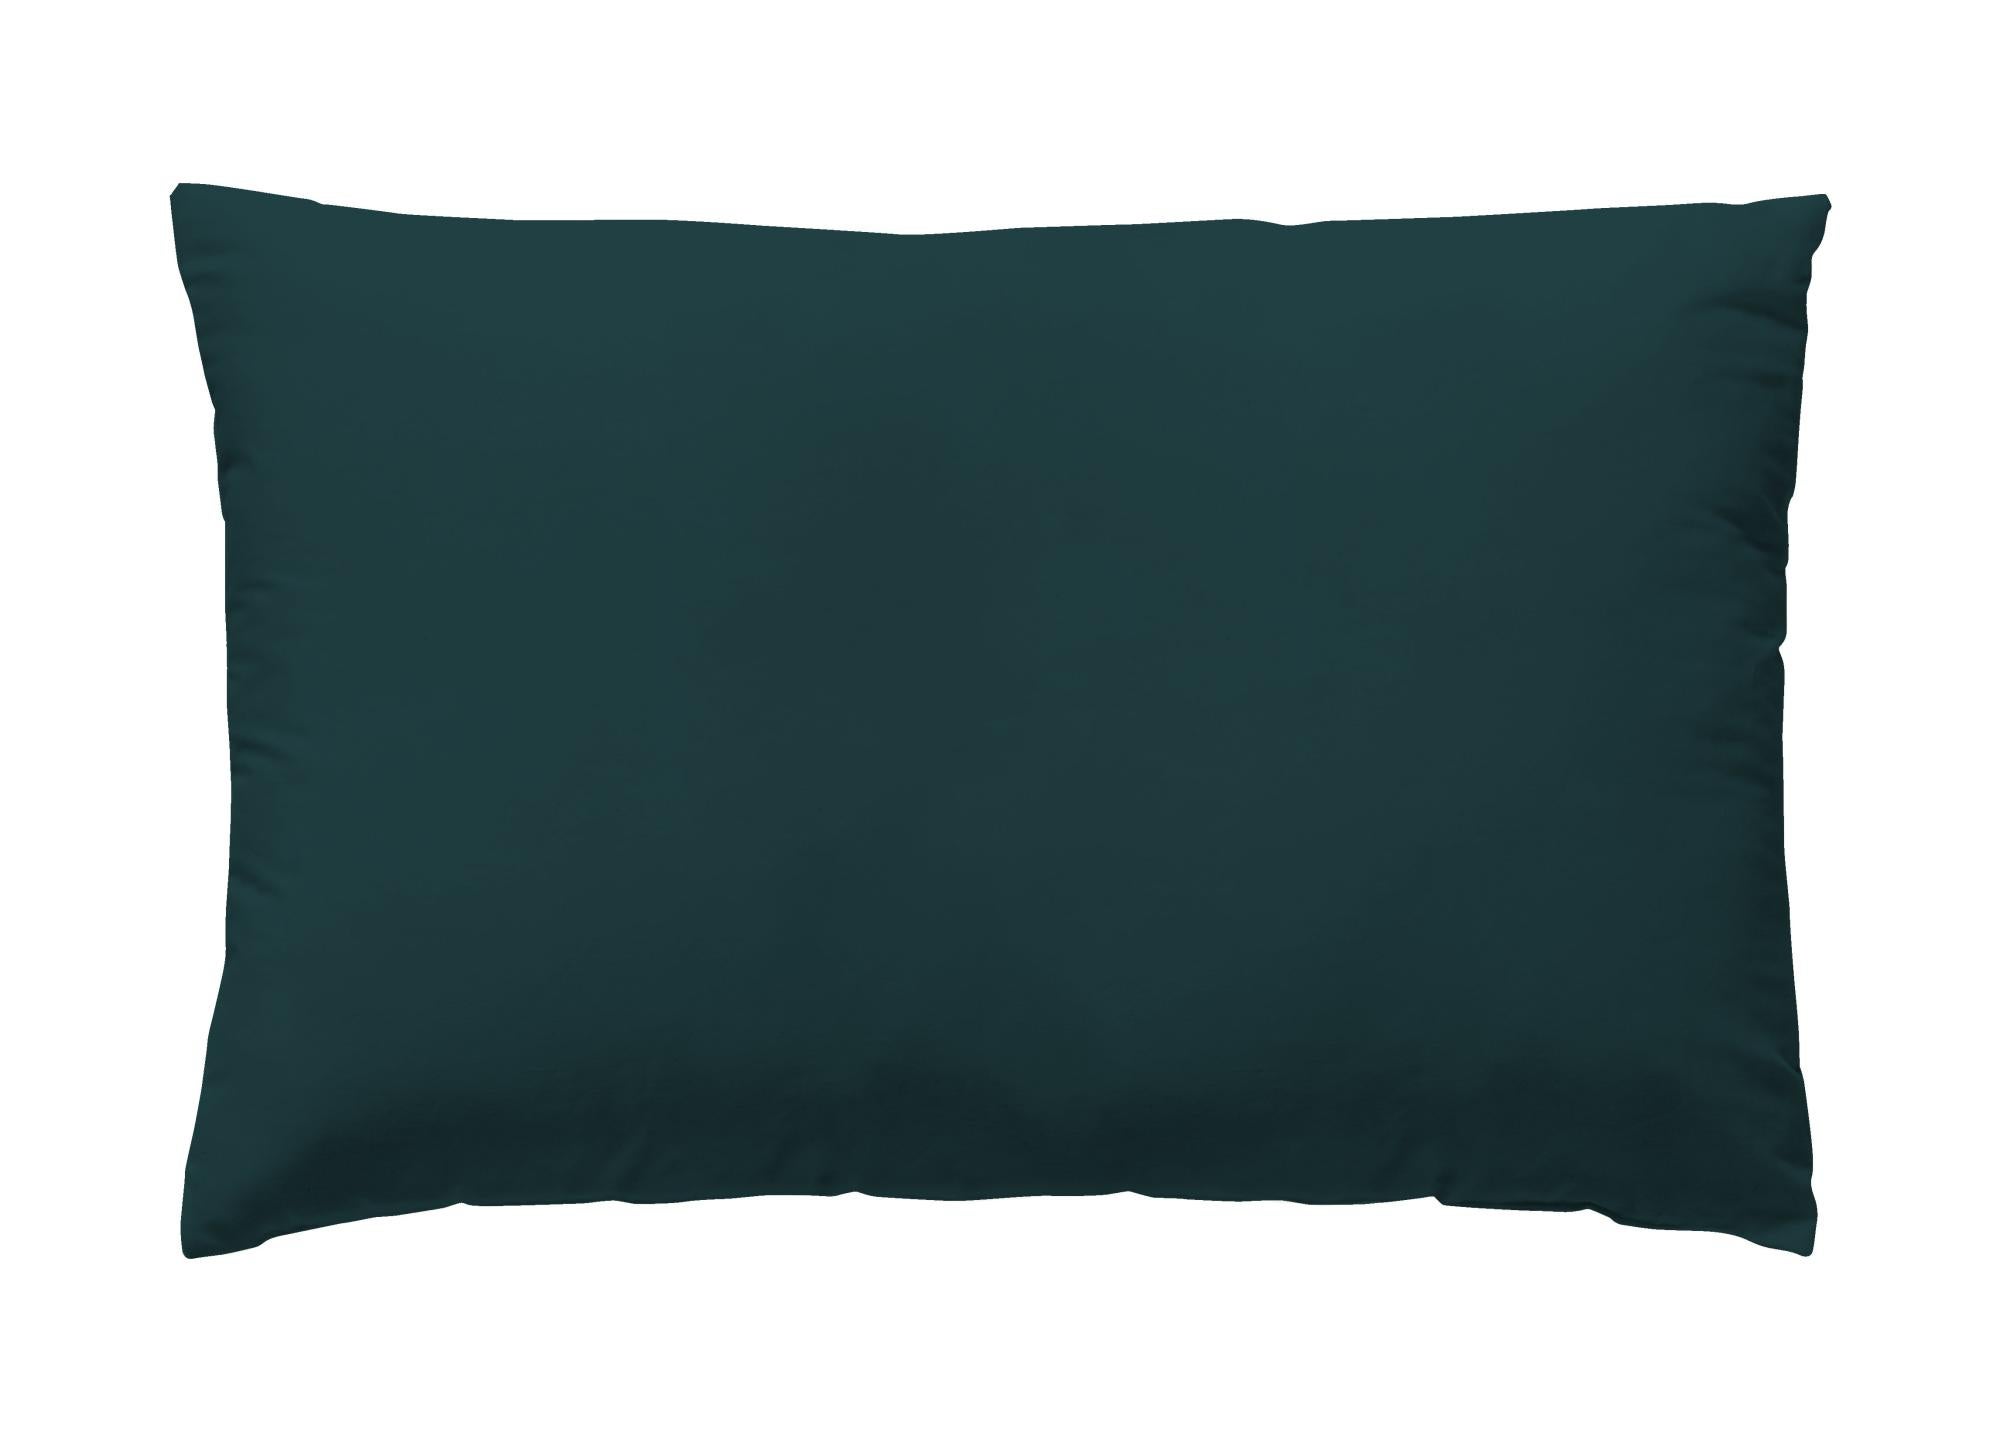 Funda de almohada wash grament algodón 200 hilos verde teal 45 x 110 cm